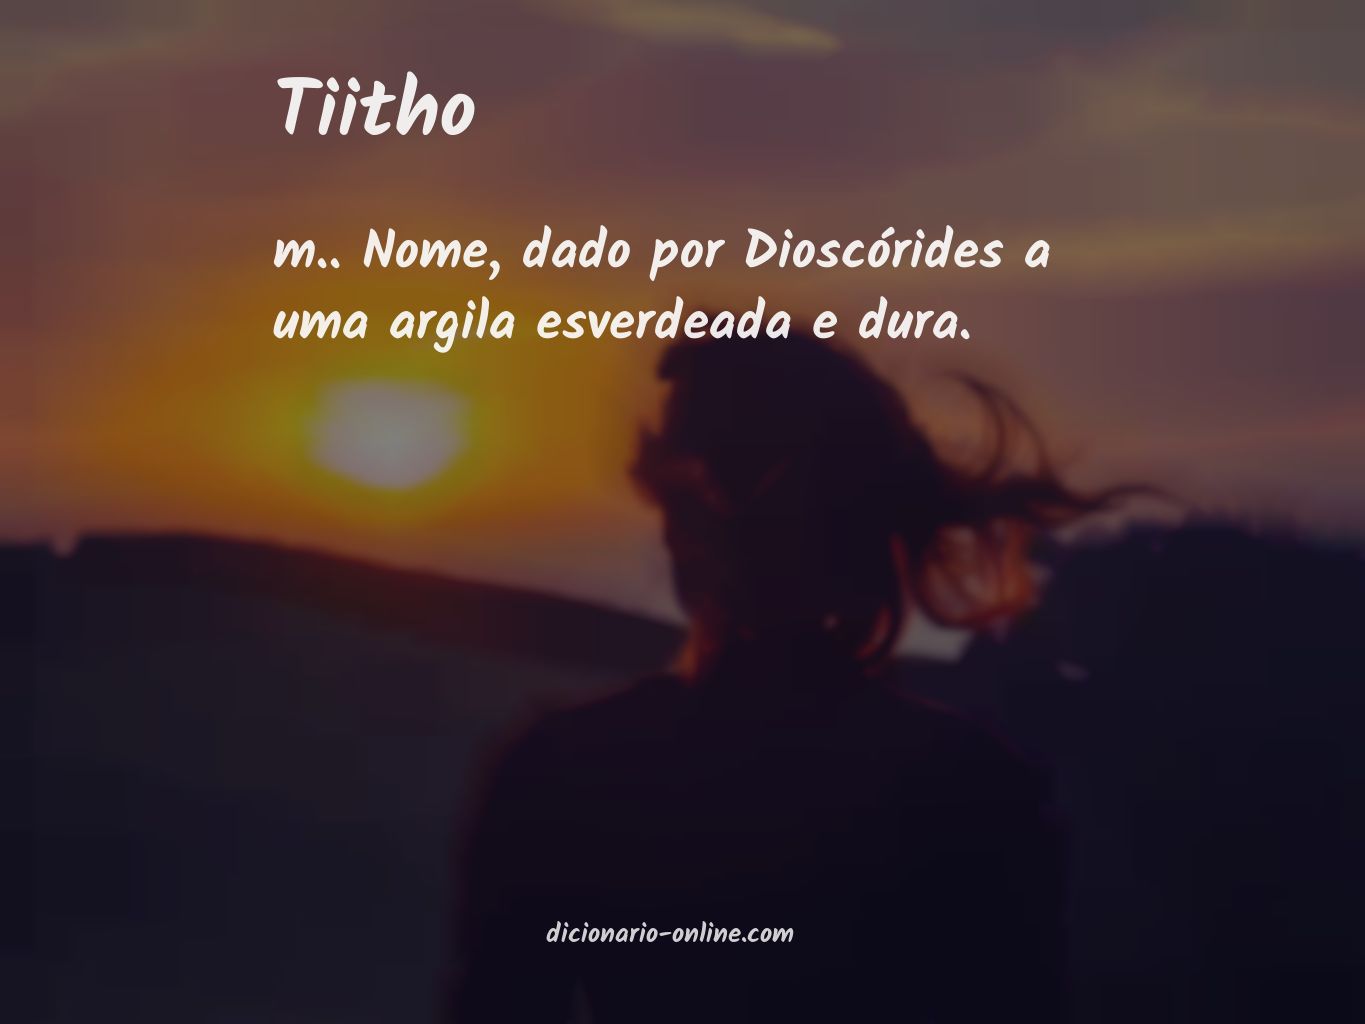 Significado de tiitho